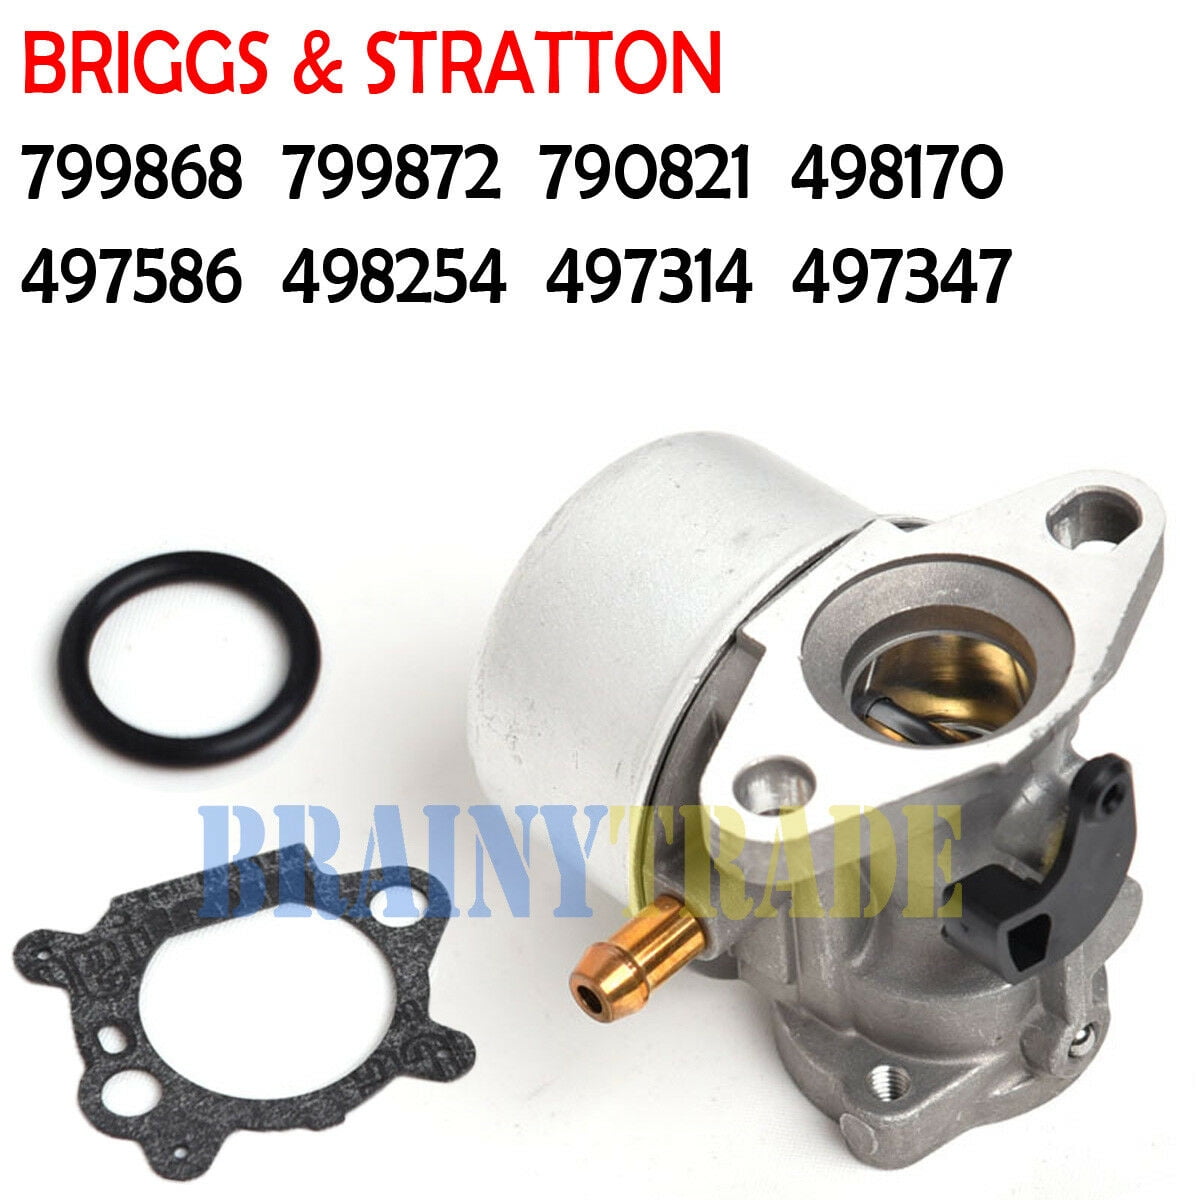 799868 Carburateur pour Briggs et Stratton 498170 799872 694202 498966 14111 hu3